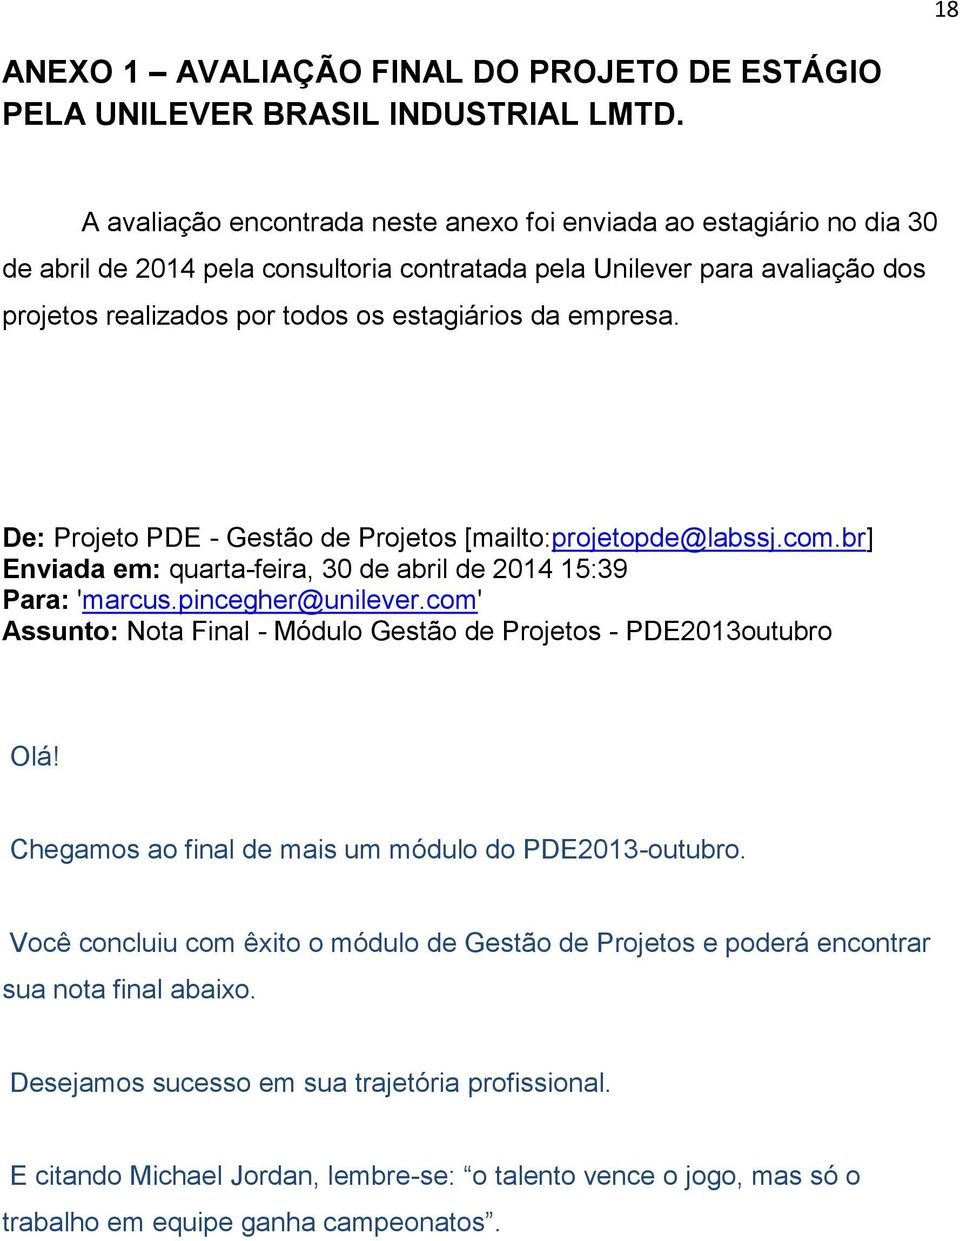 empresa. De: Projeto PDE - Gestão de Projetos [mailto:projetopde@labssj.com.br] Enviada em: quarta-feira, 30 de abril de 2014 15:39 Para: 'marcus.pincegher@unilever.